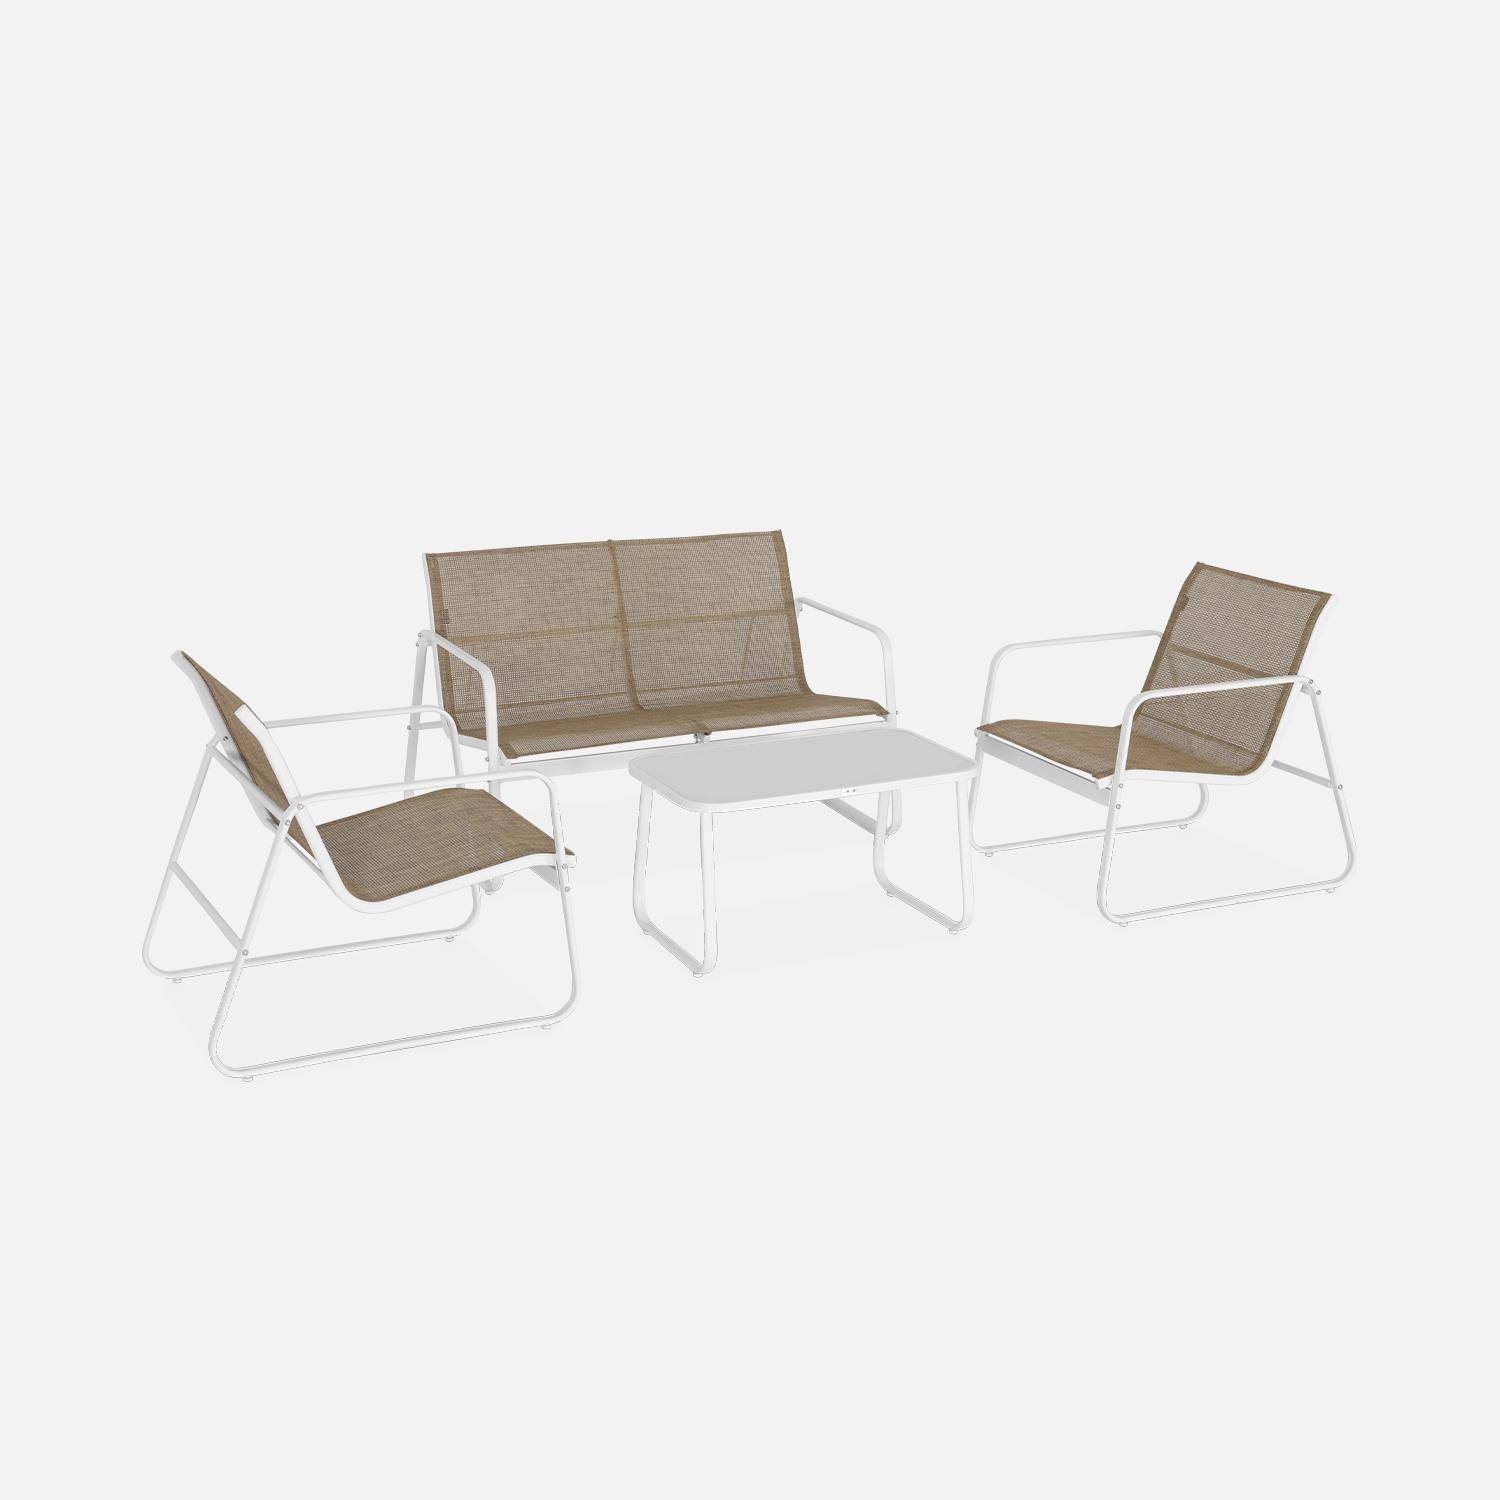 Mobiliário de jardim metálico e textileno para 4 pessoas, branco e natural, design   Photo3